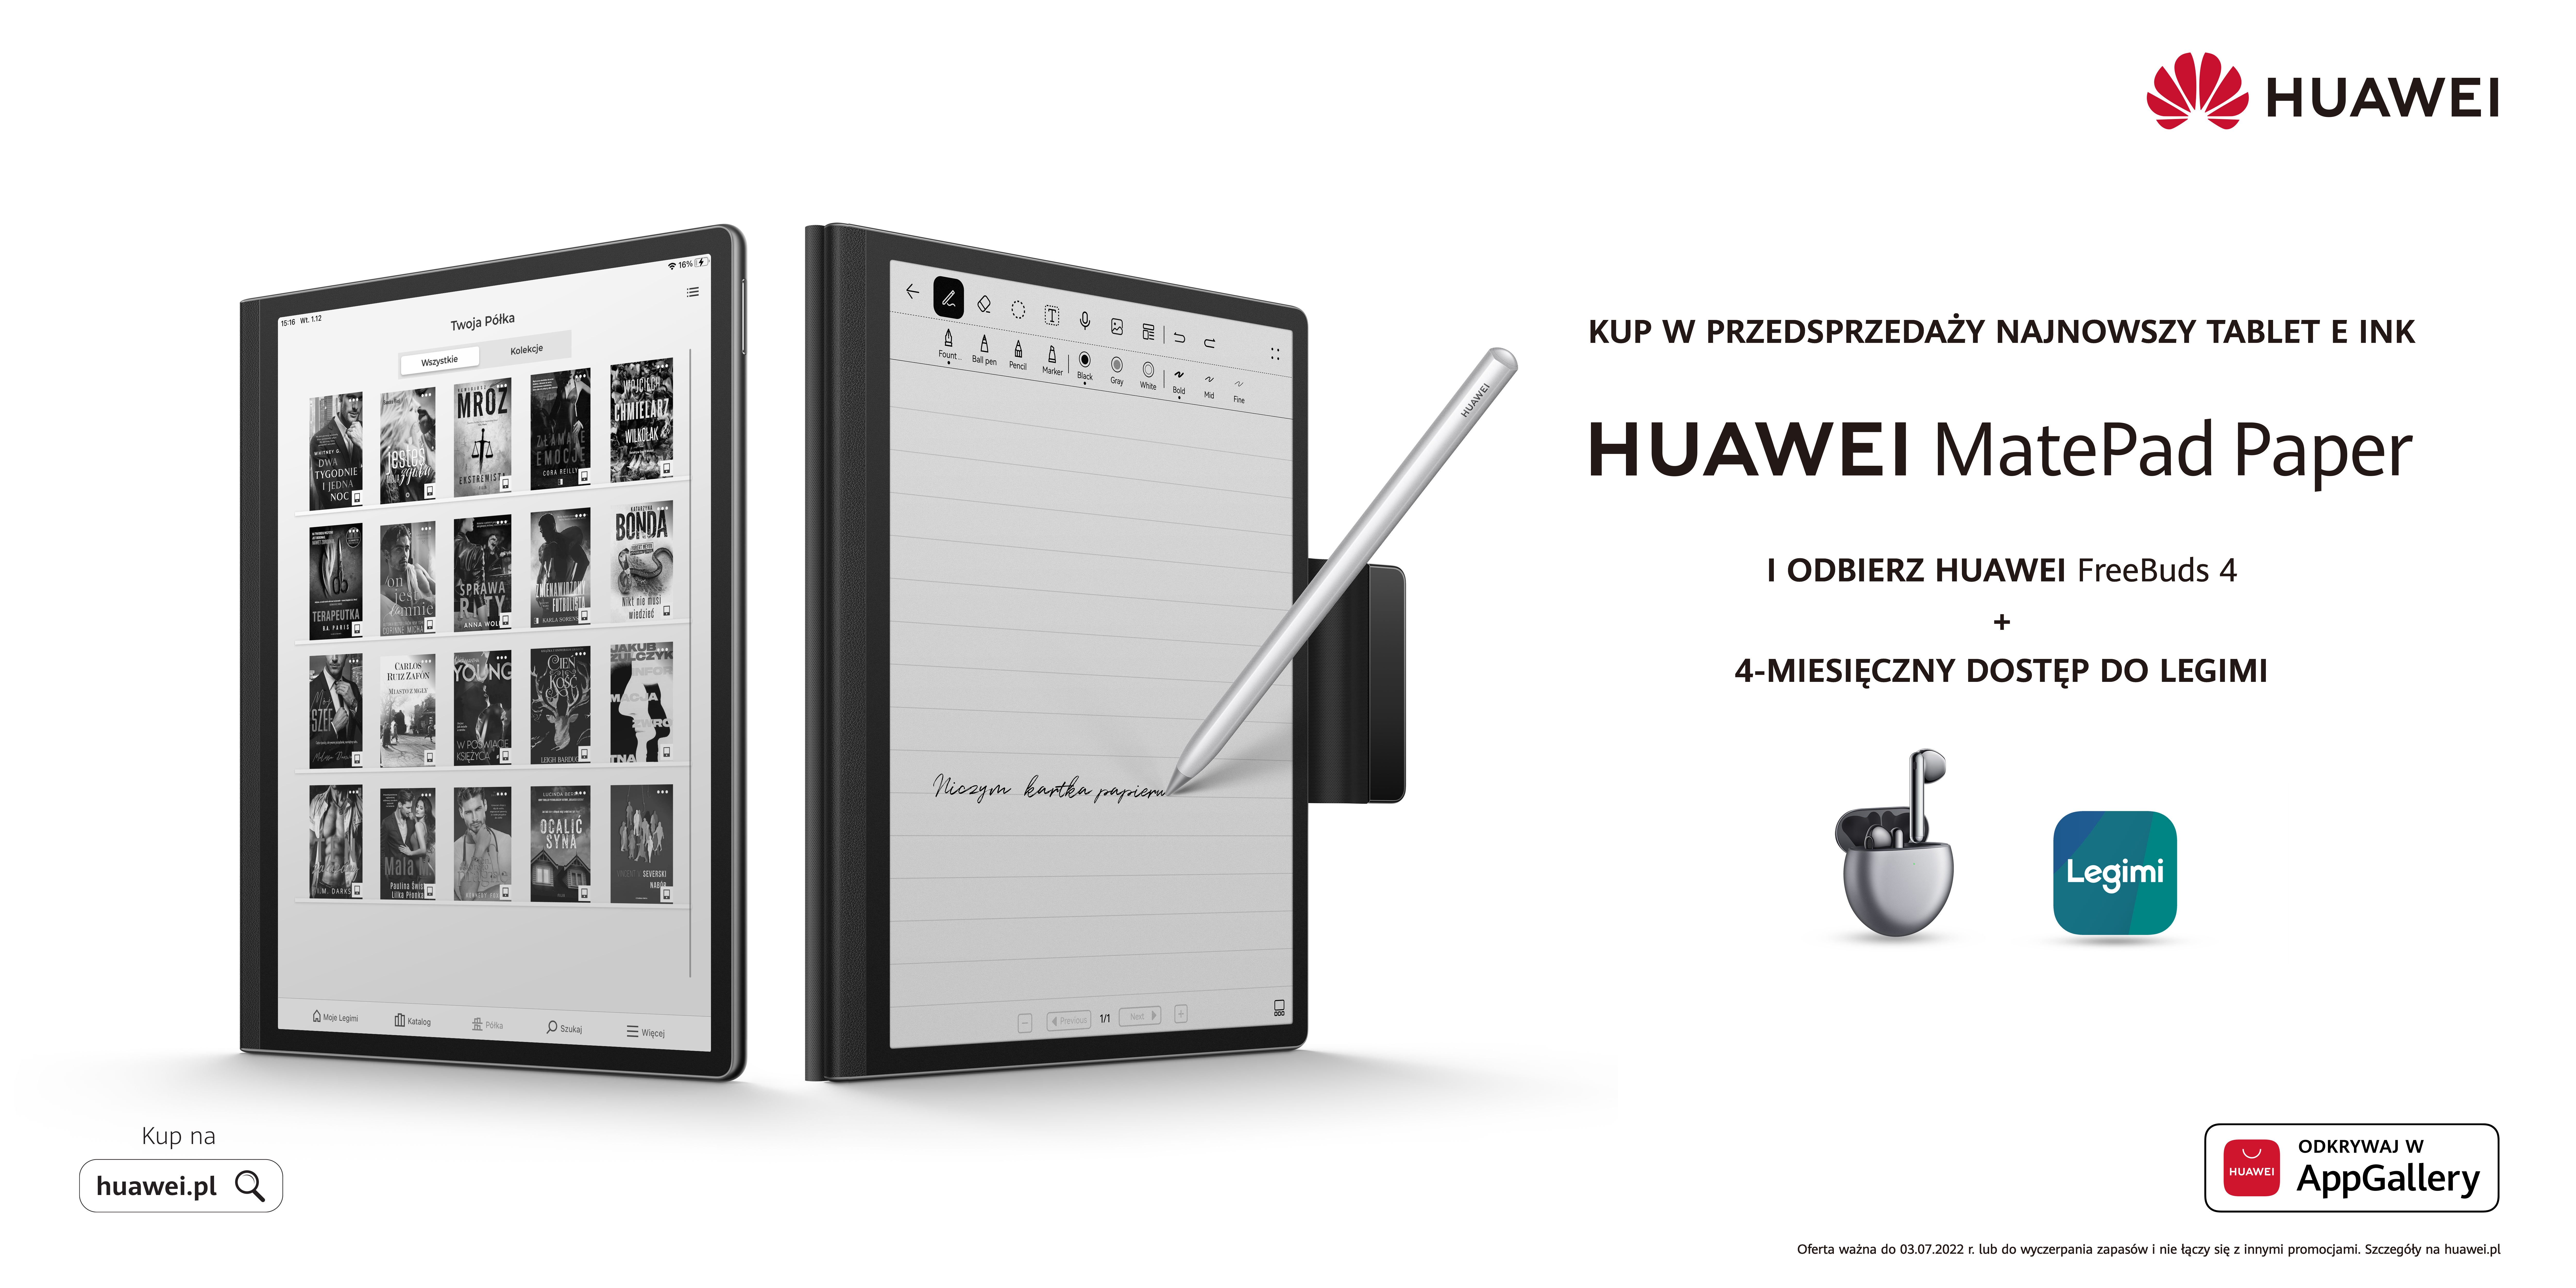 Huawei prezentuje swój pierwszy tablet z technologią E Ink – MatePad Paper